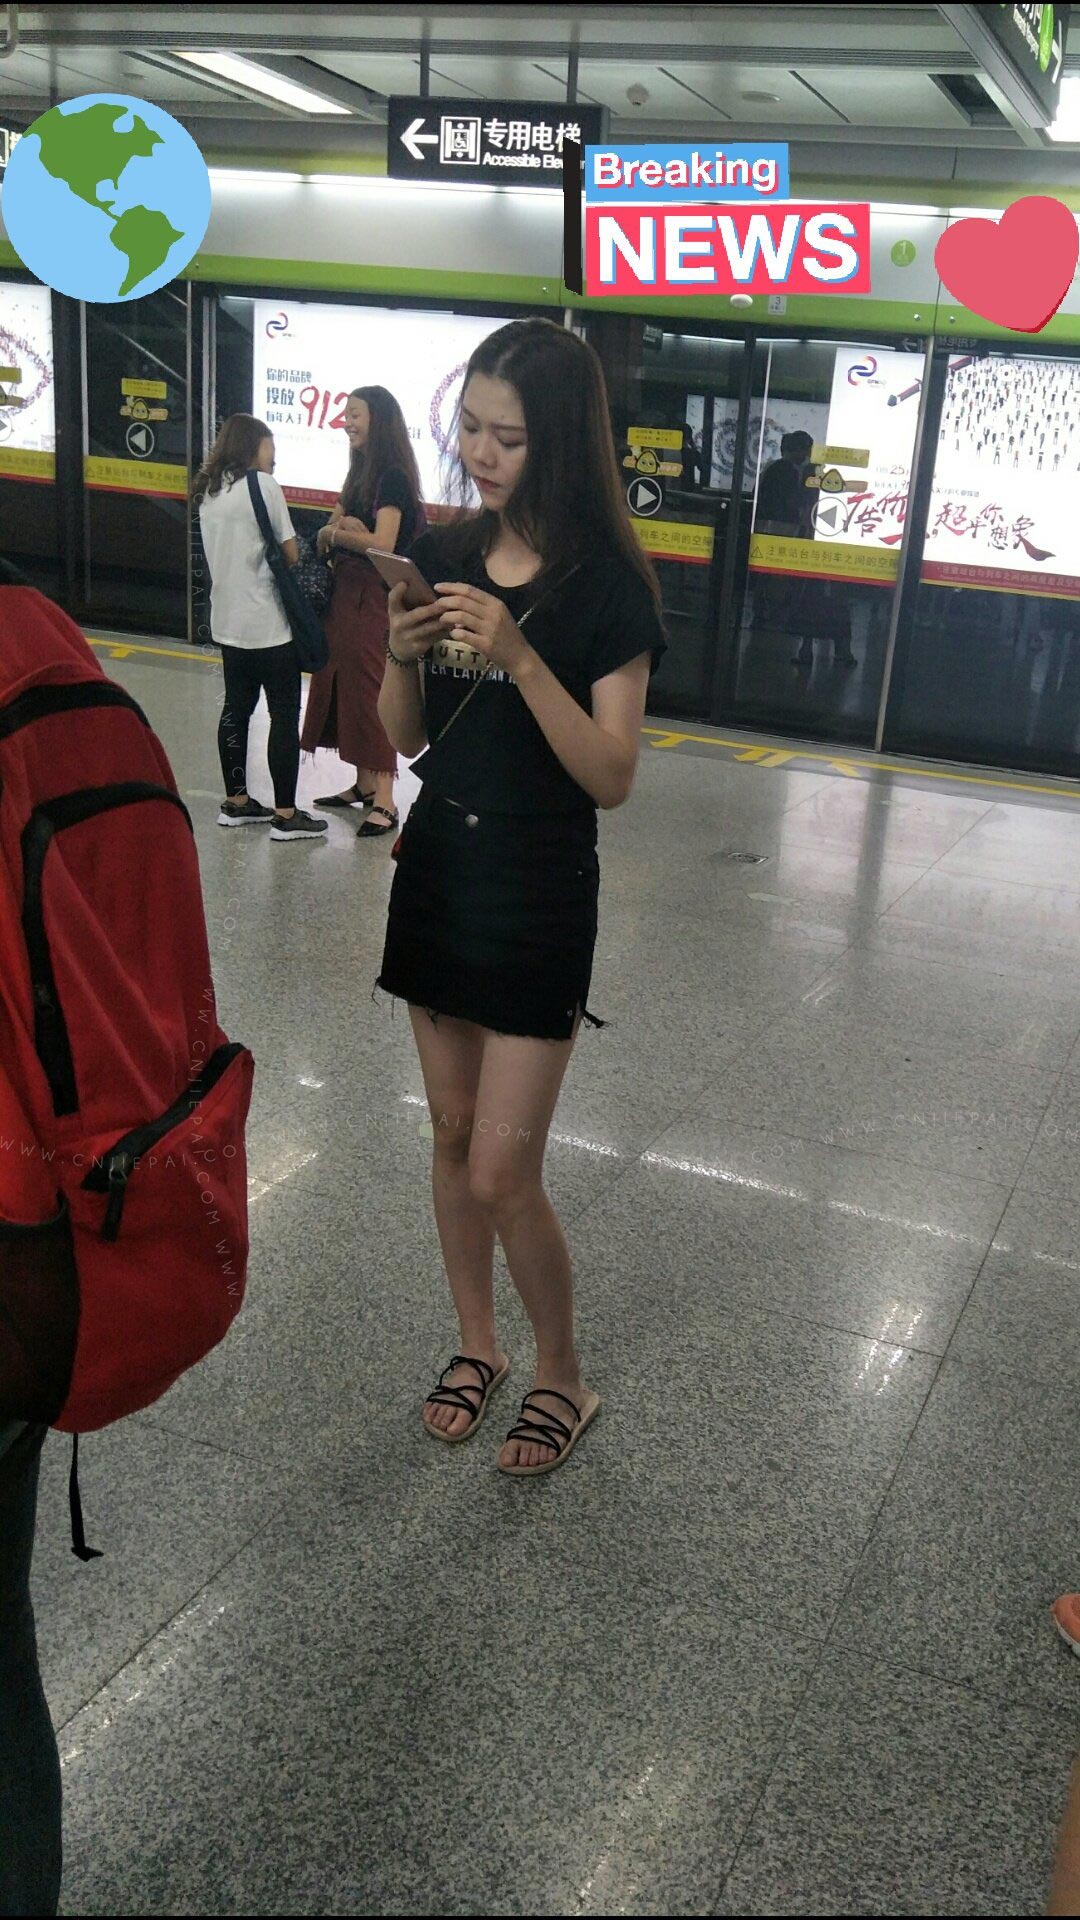 等地铁的黑色短裙美女 图1